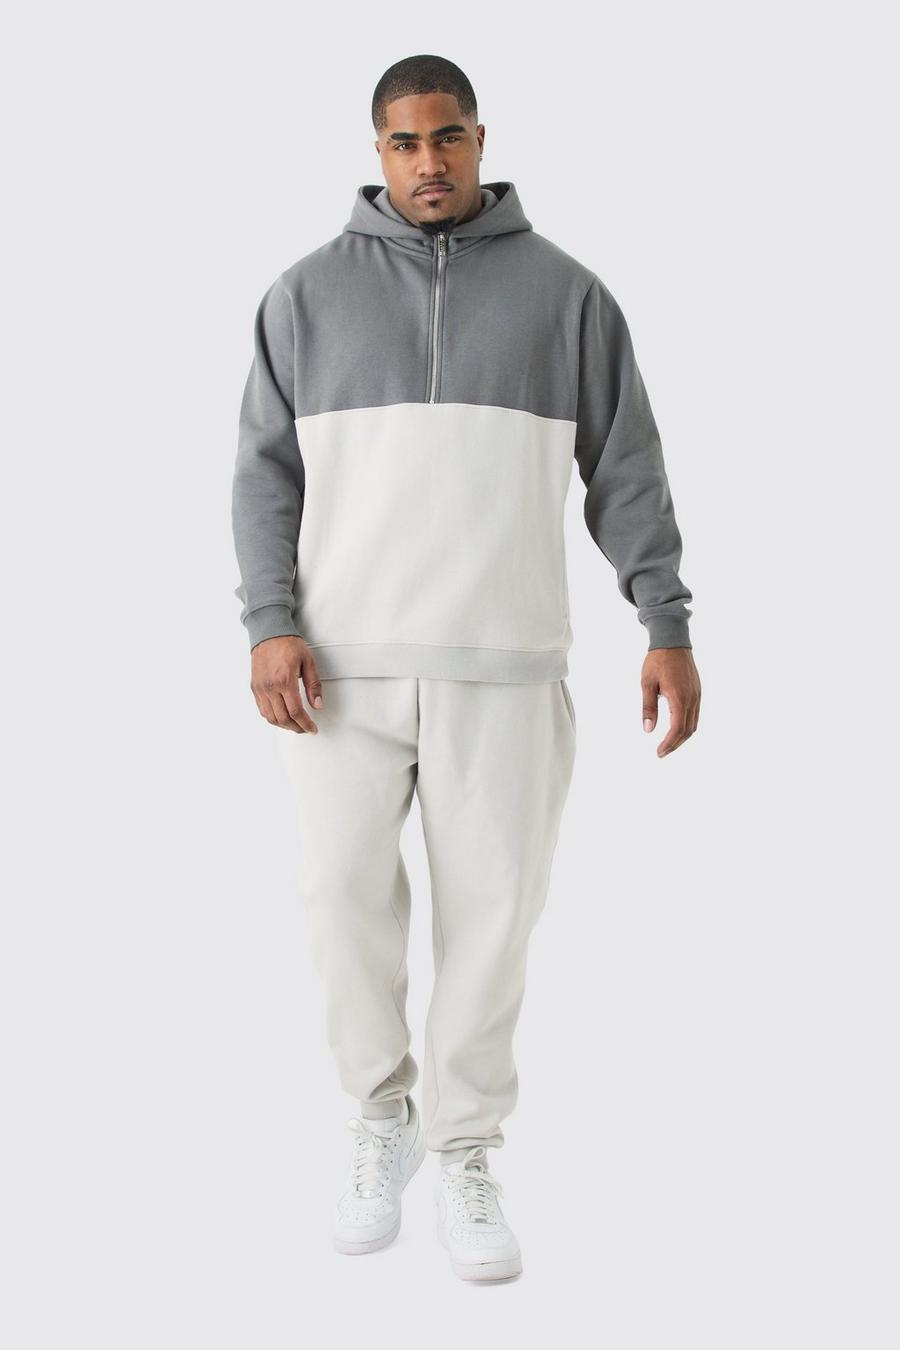 Plus Slim-Fit Colorblock Trainingsanzug mit Reißverschluss, Light grey